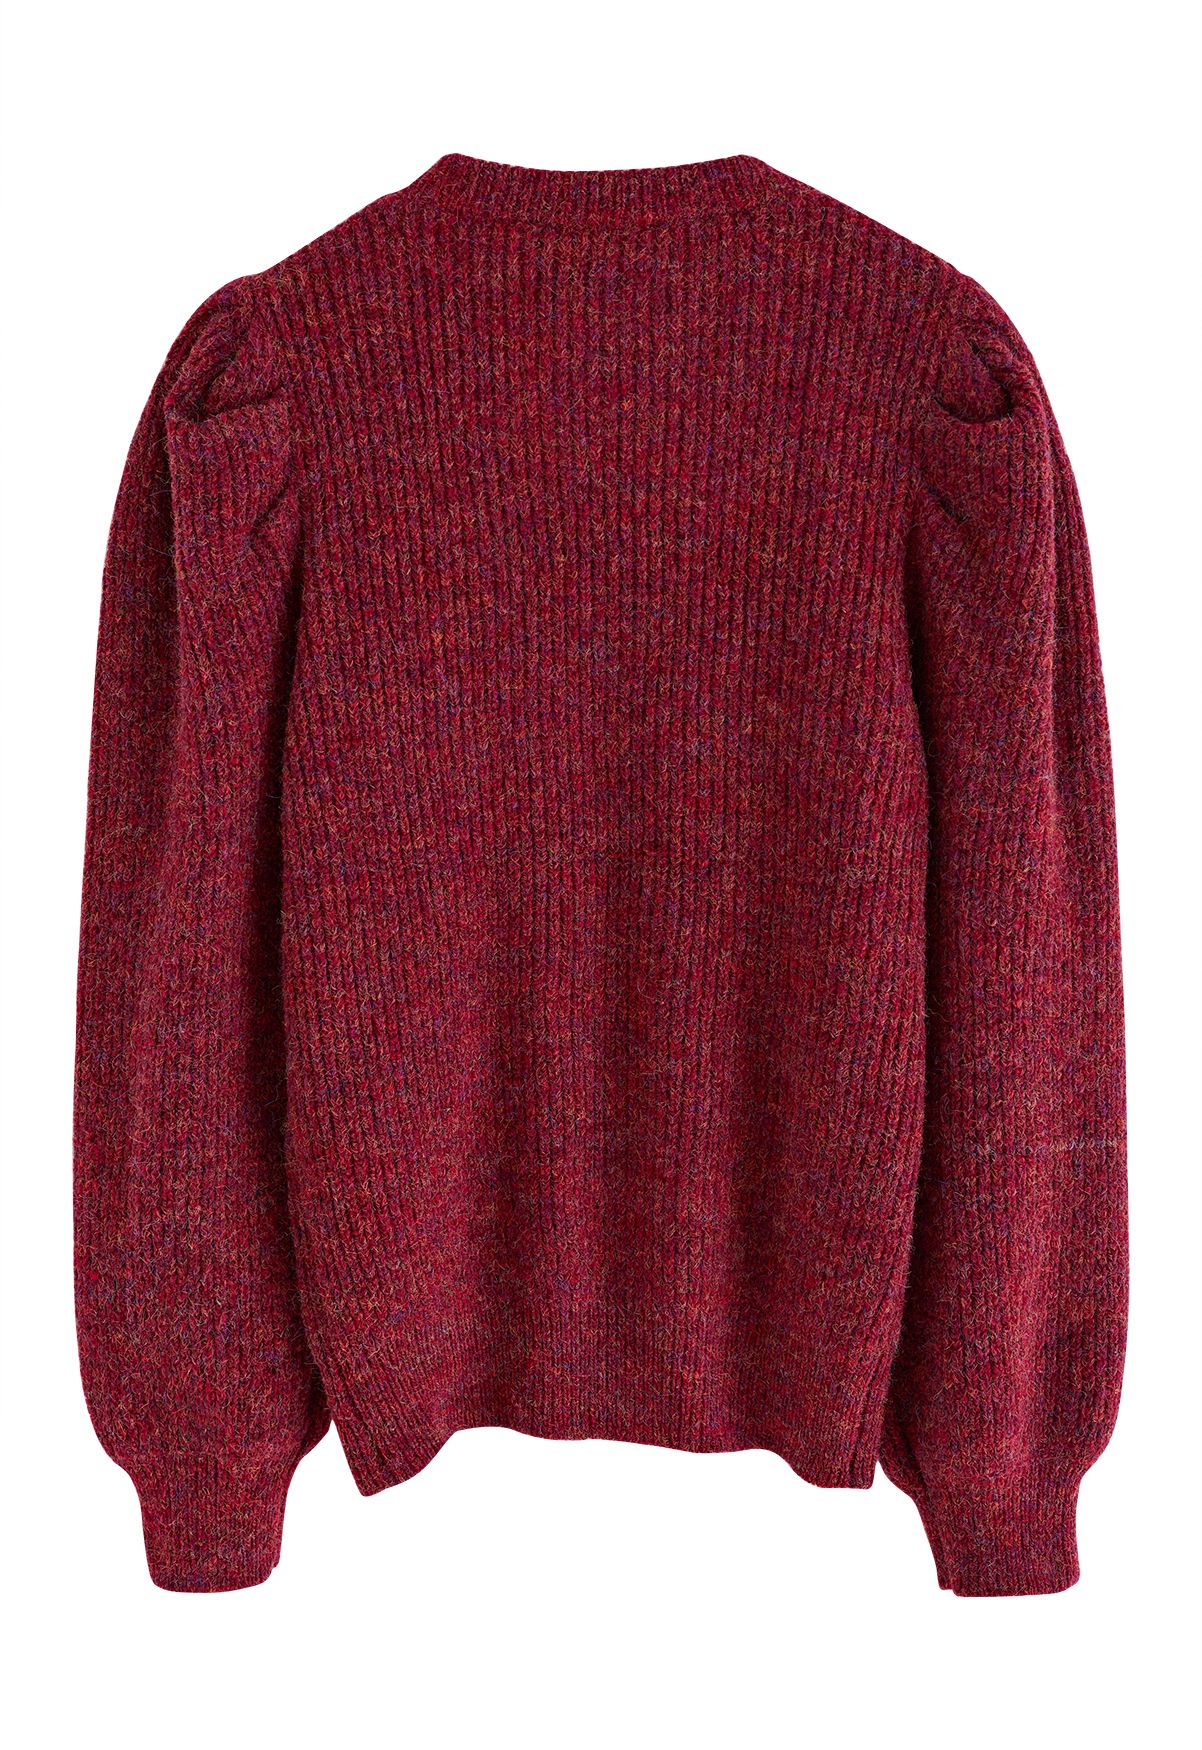 Suéter canelado com manga bufante em malha mista em vermelho